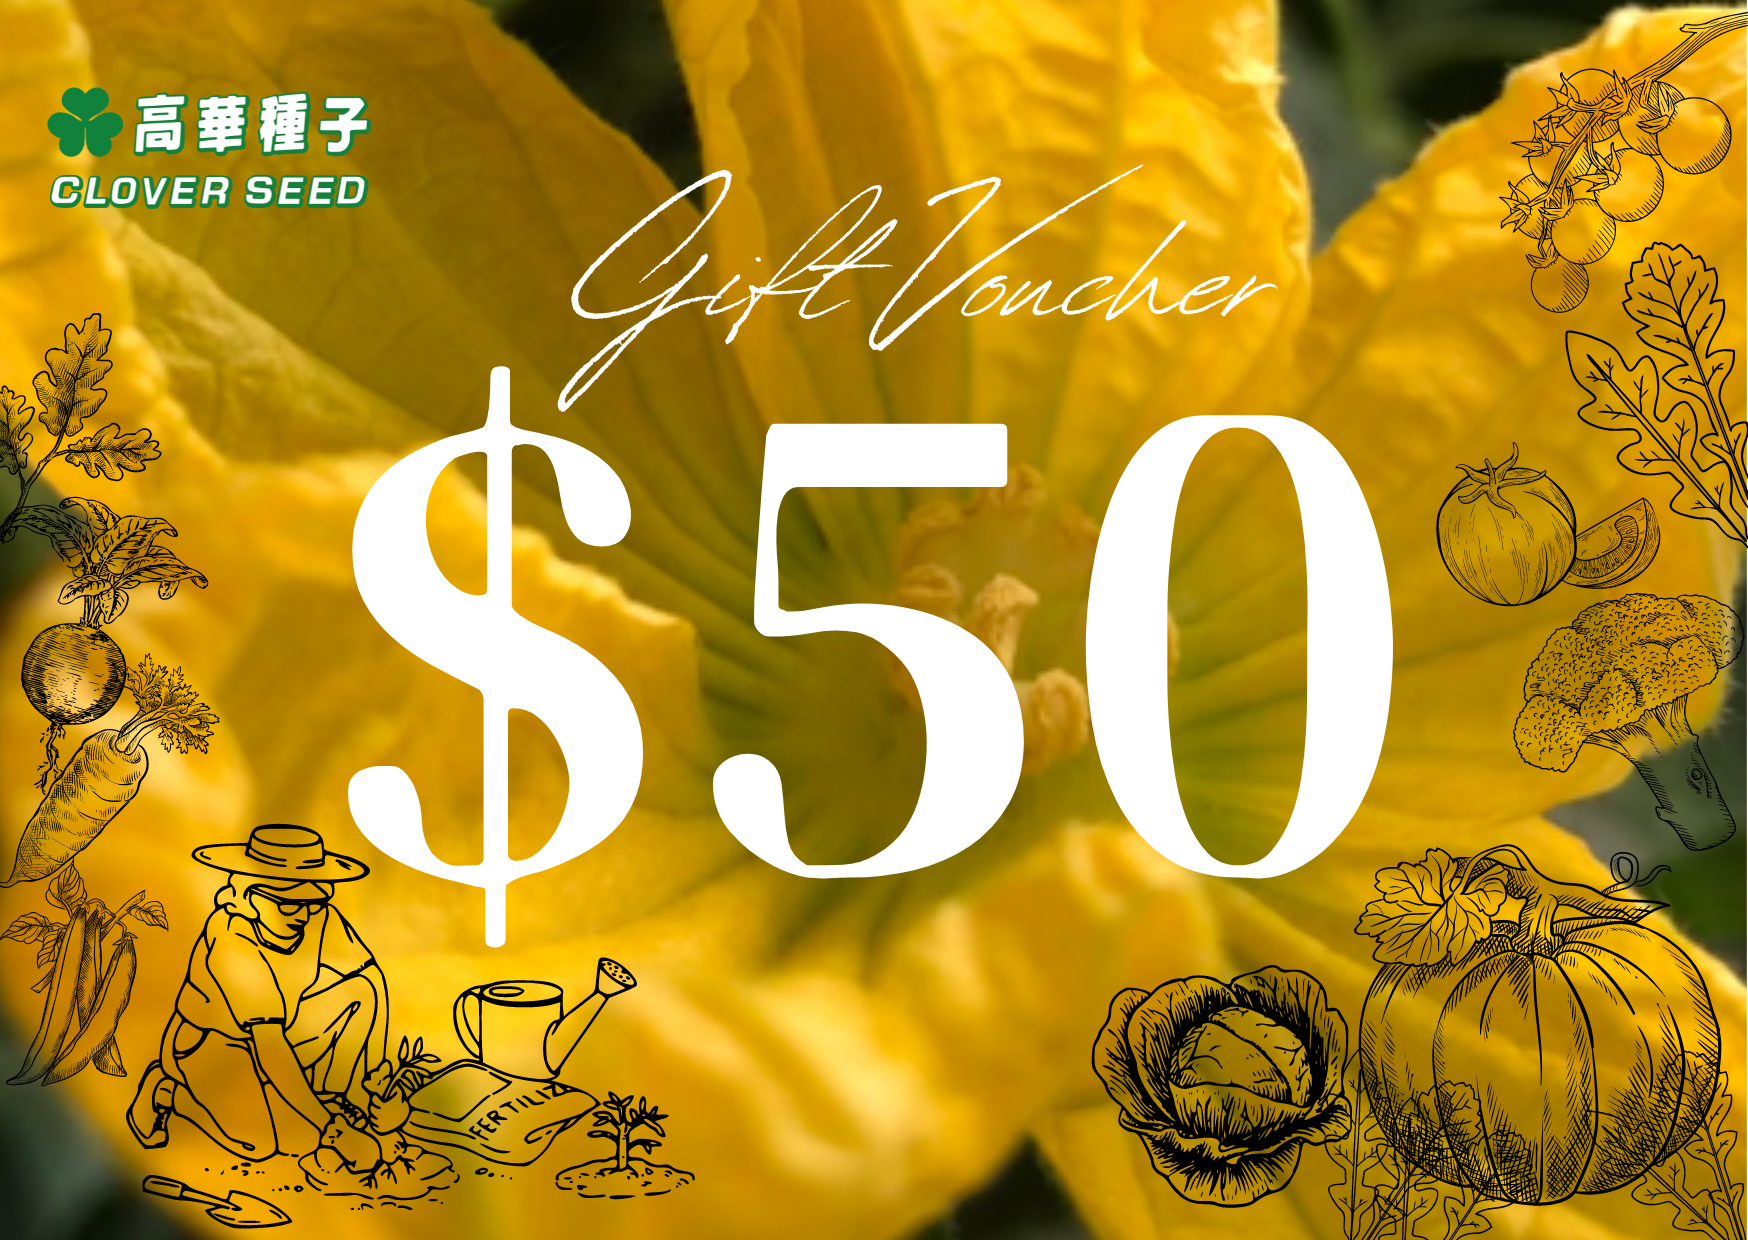 $50高華種子禮品卡 / $50 Clover Seed Gift Card